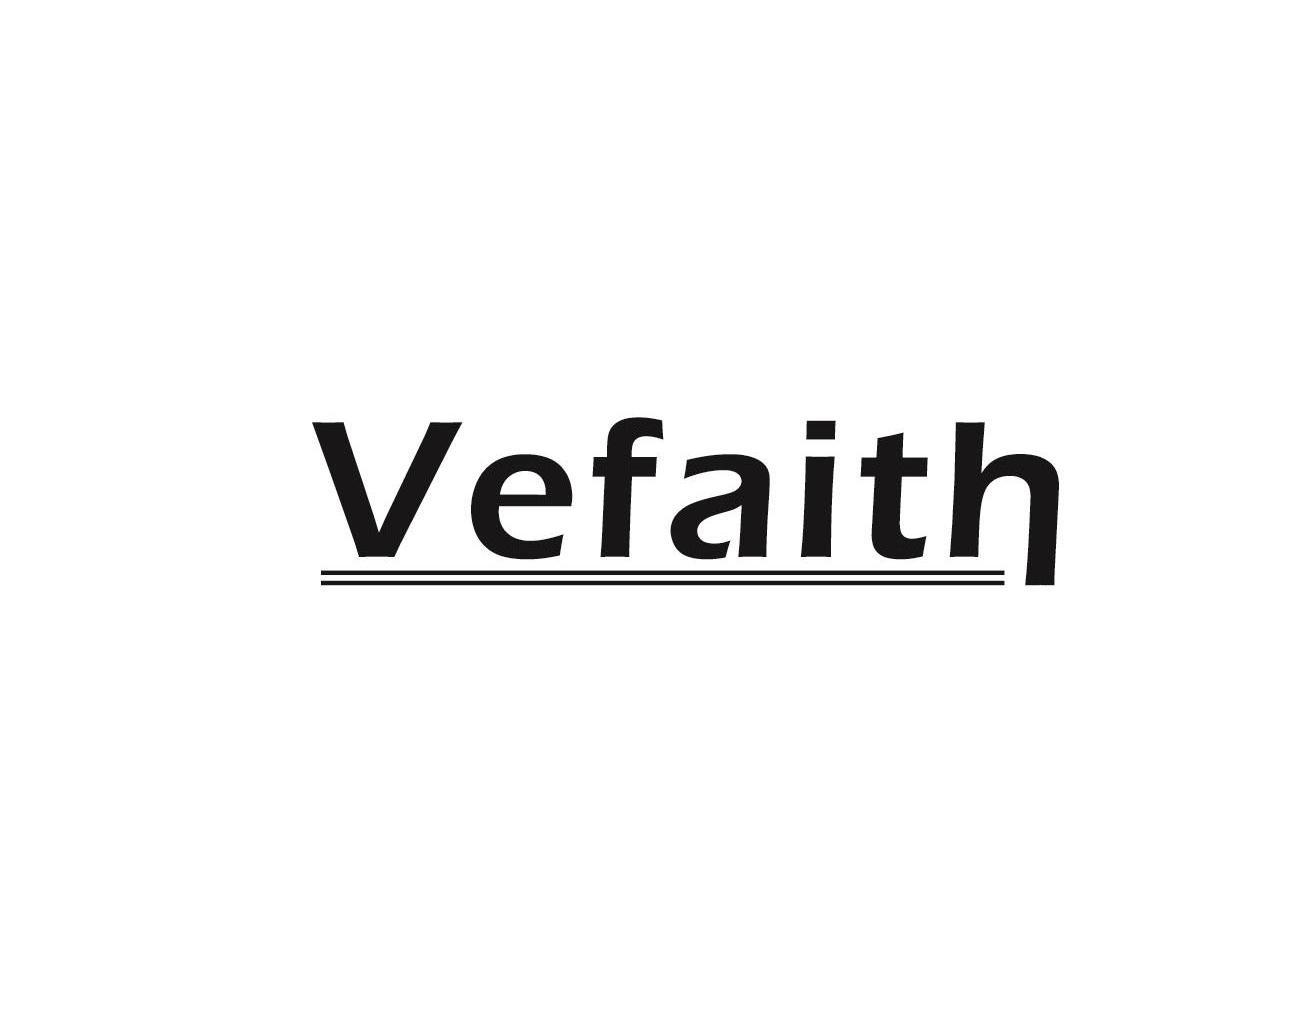 VEFAITH